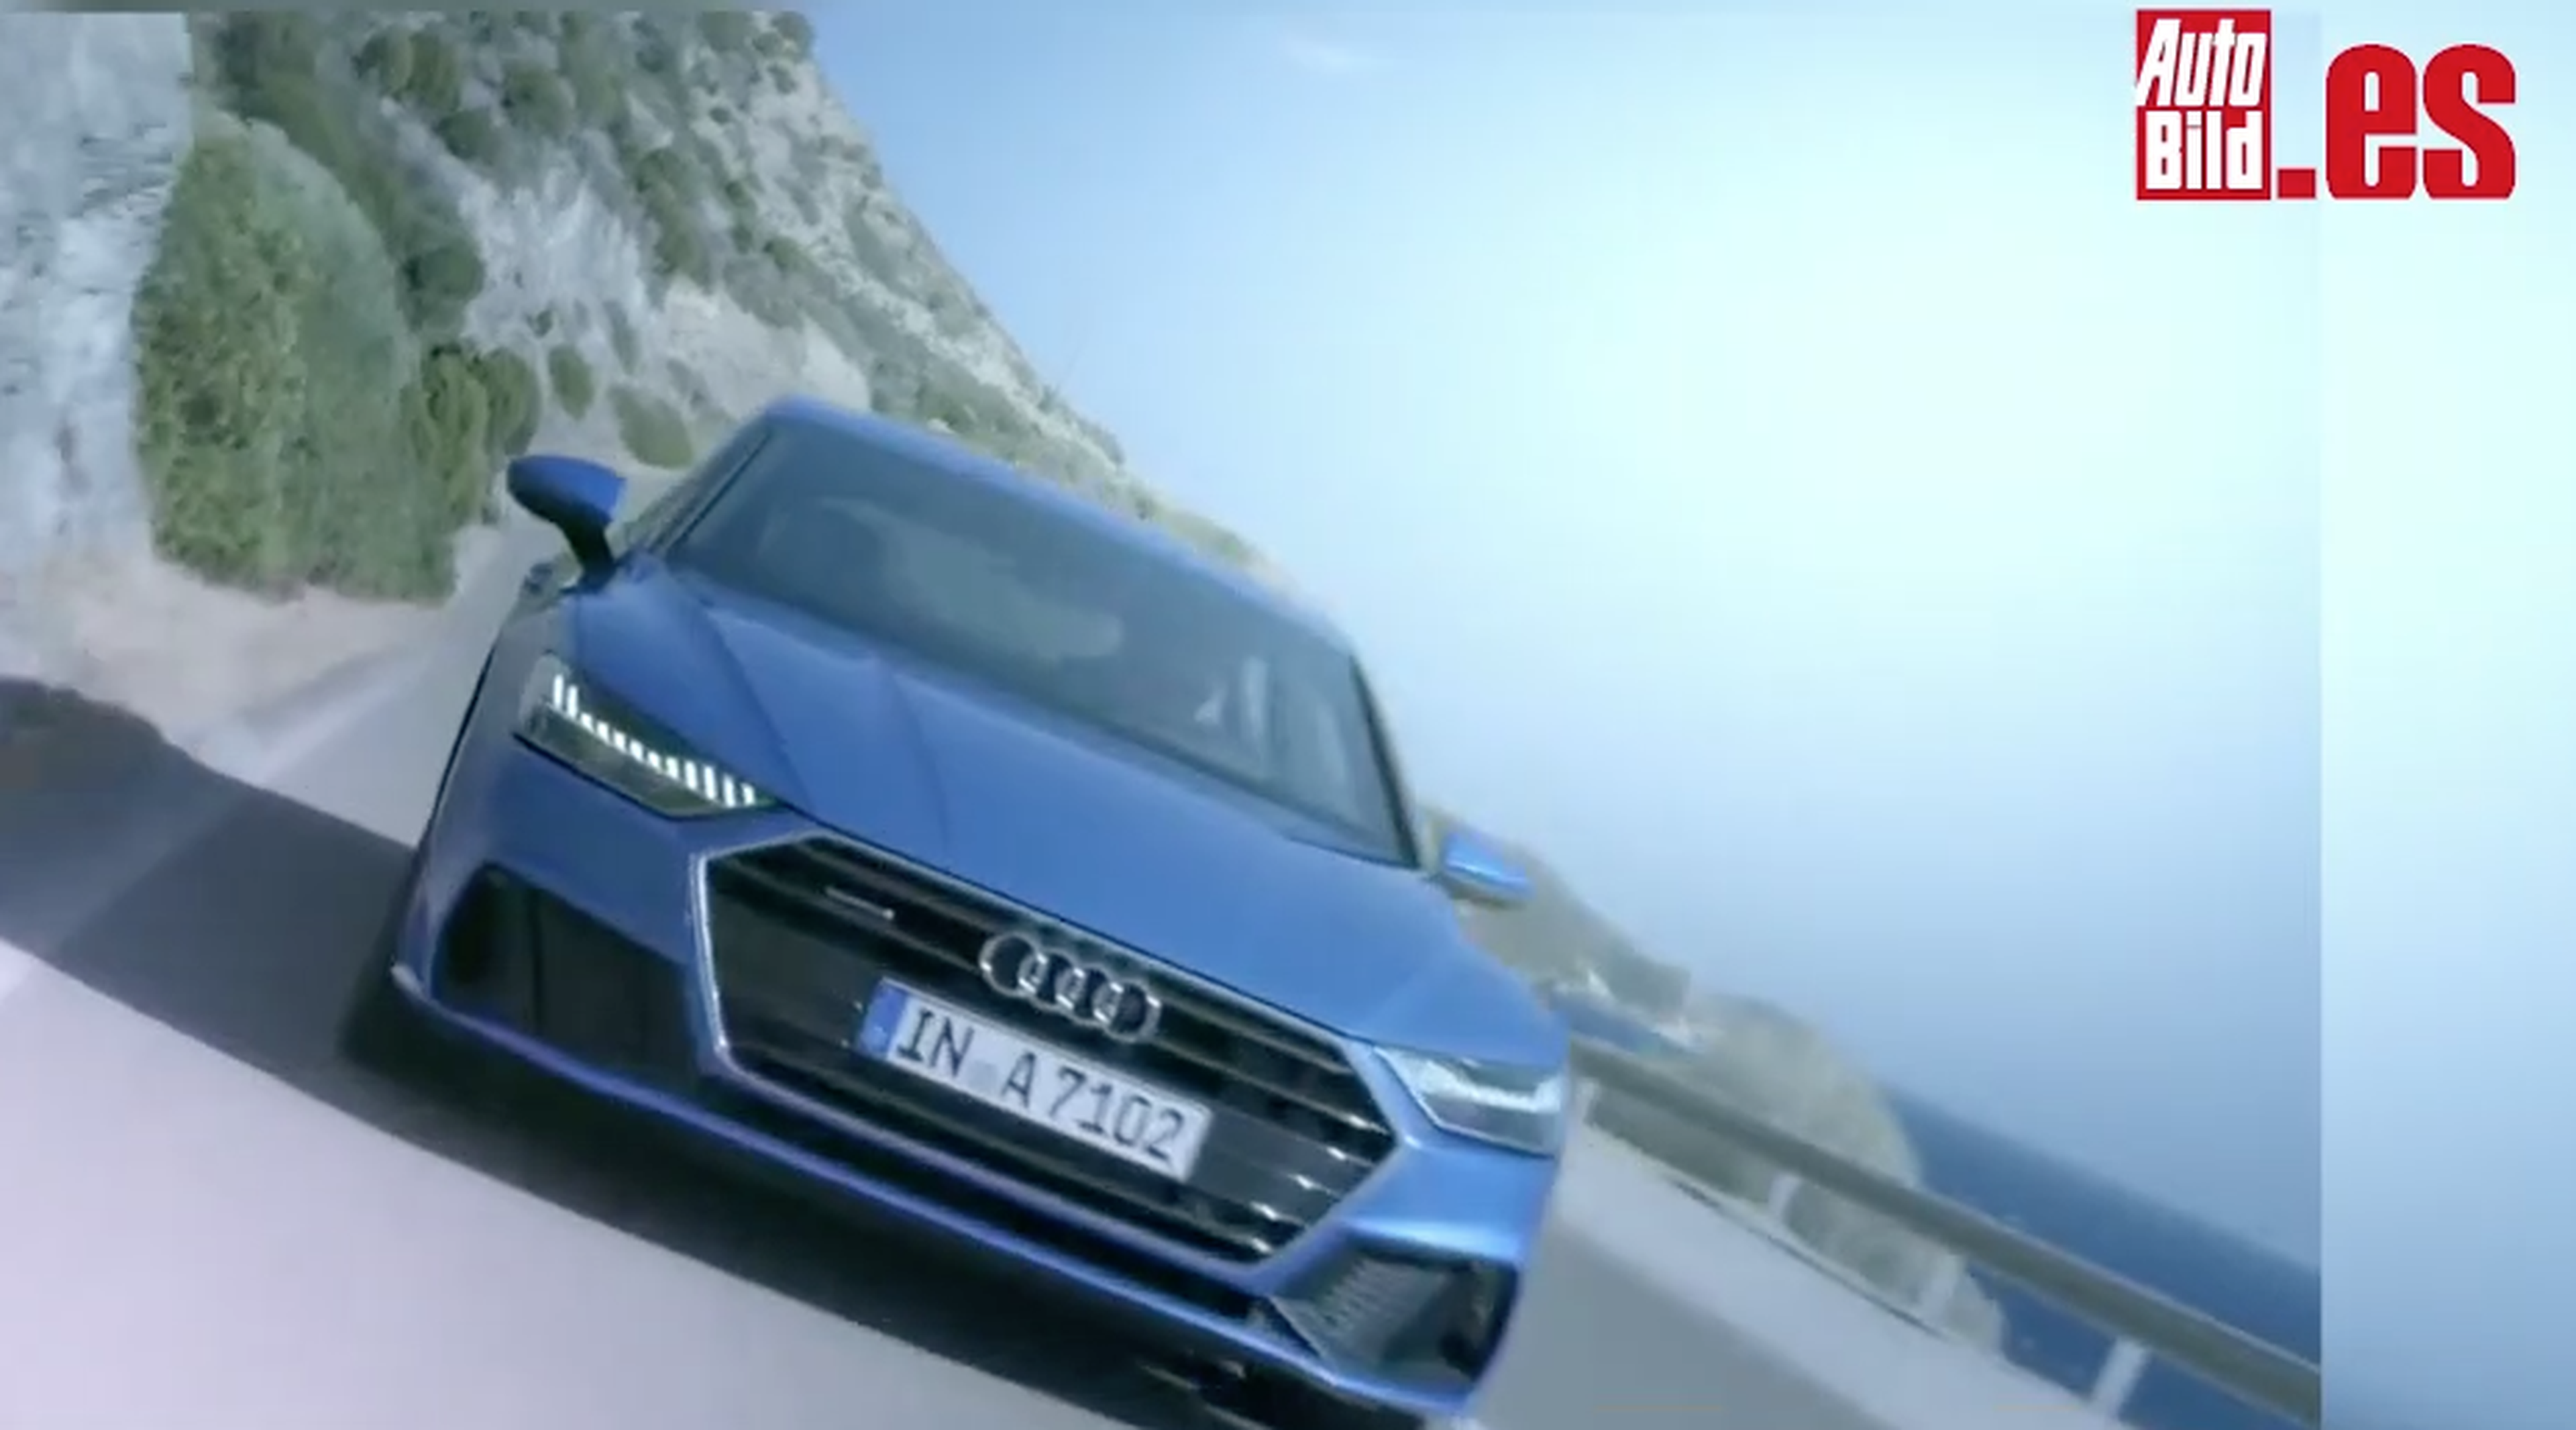 VÍDEO: Audi A7 2018, todos los detalles en movimiento